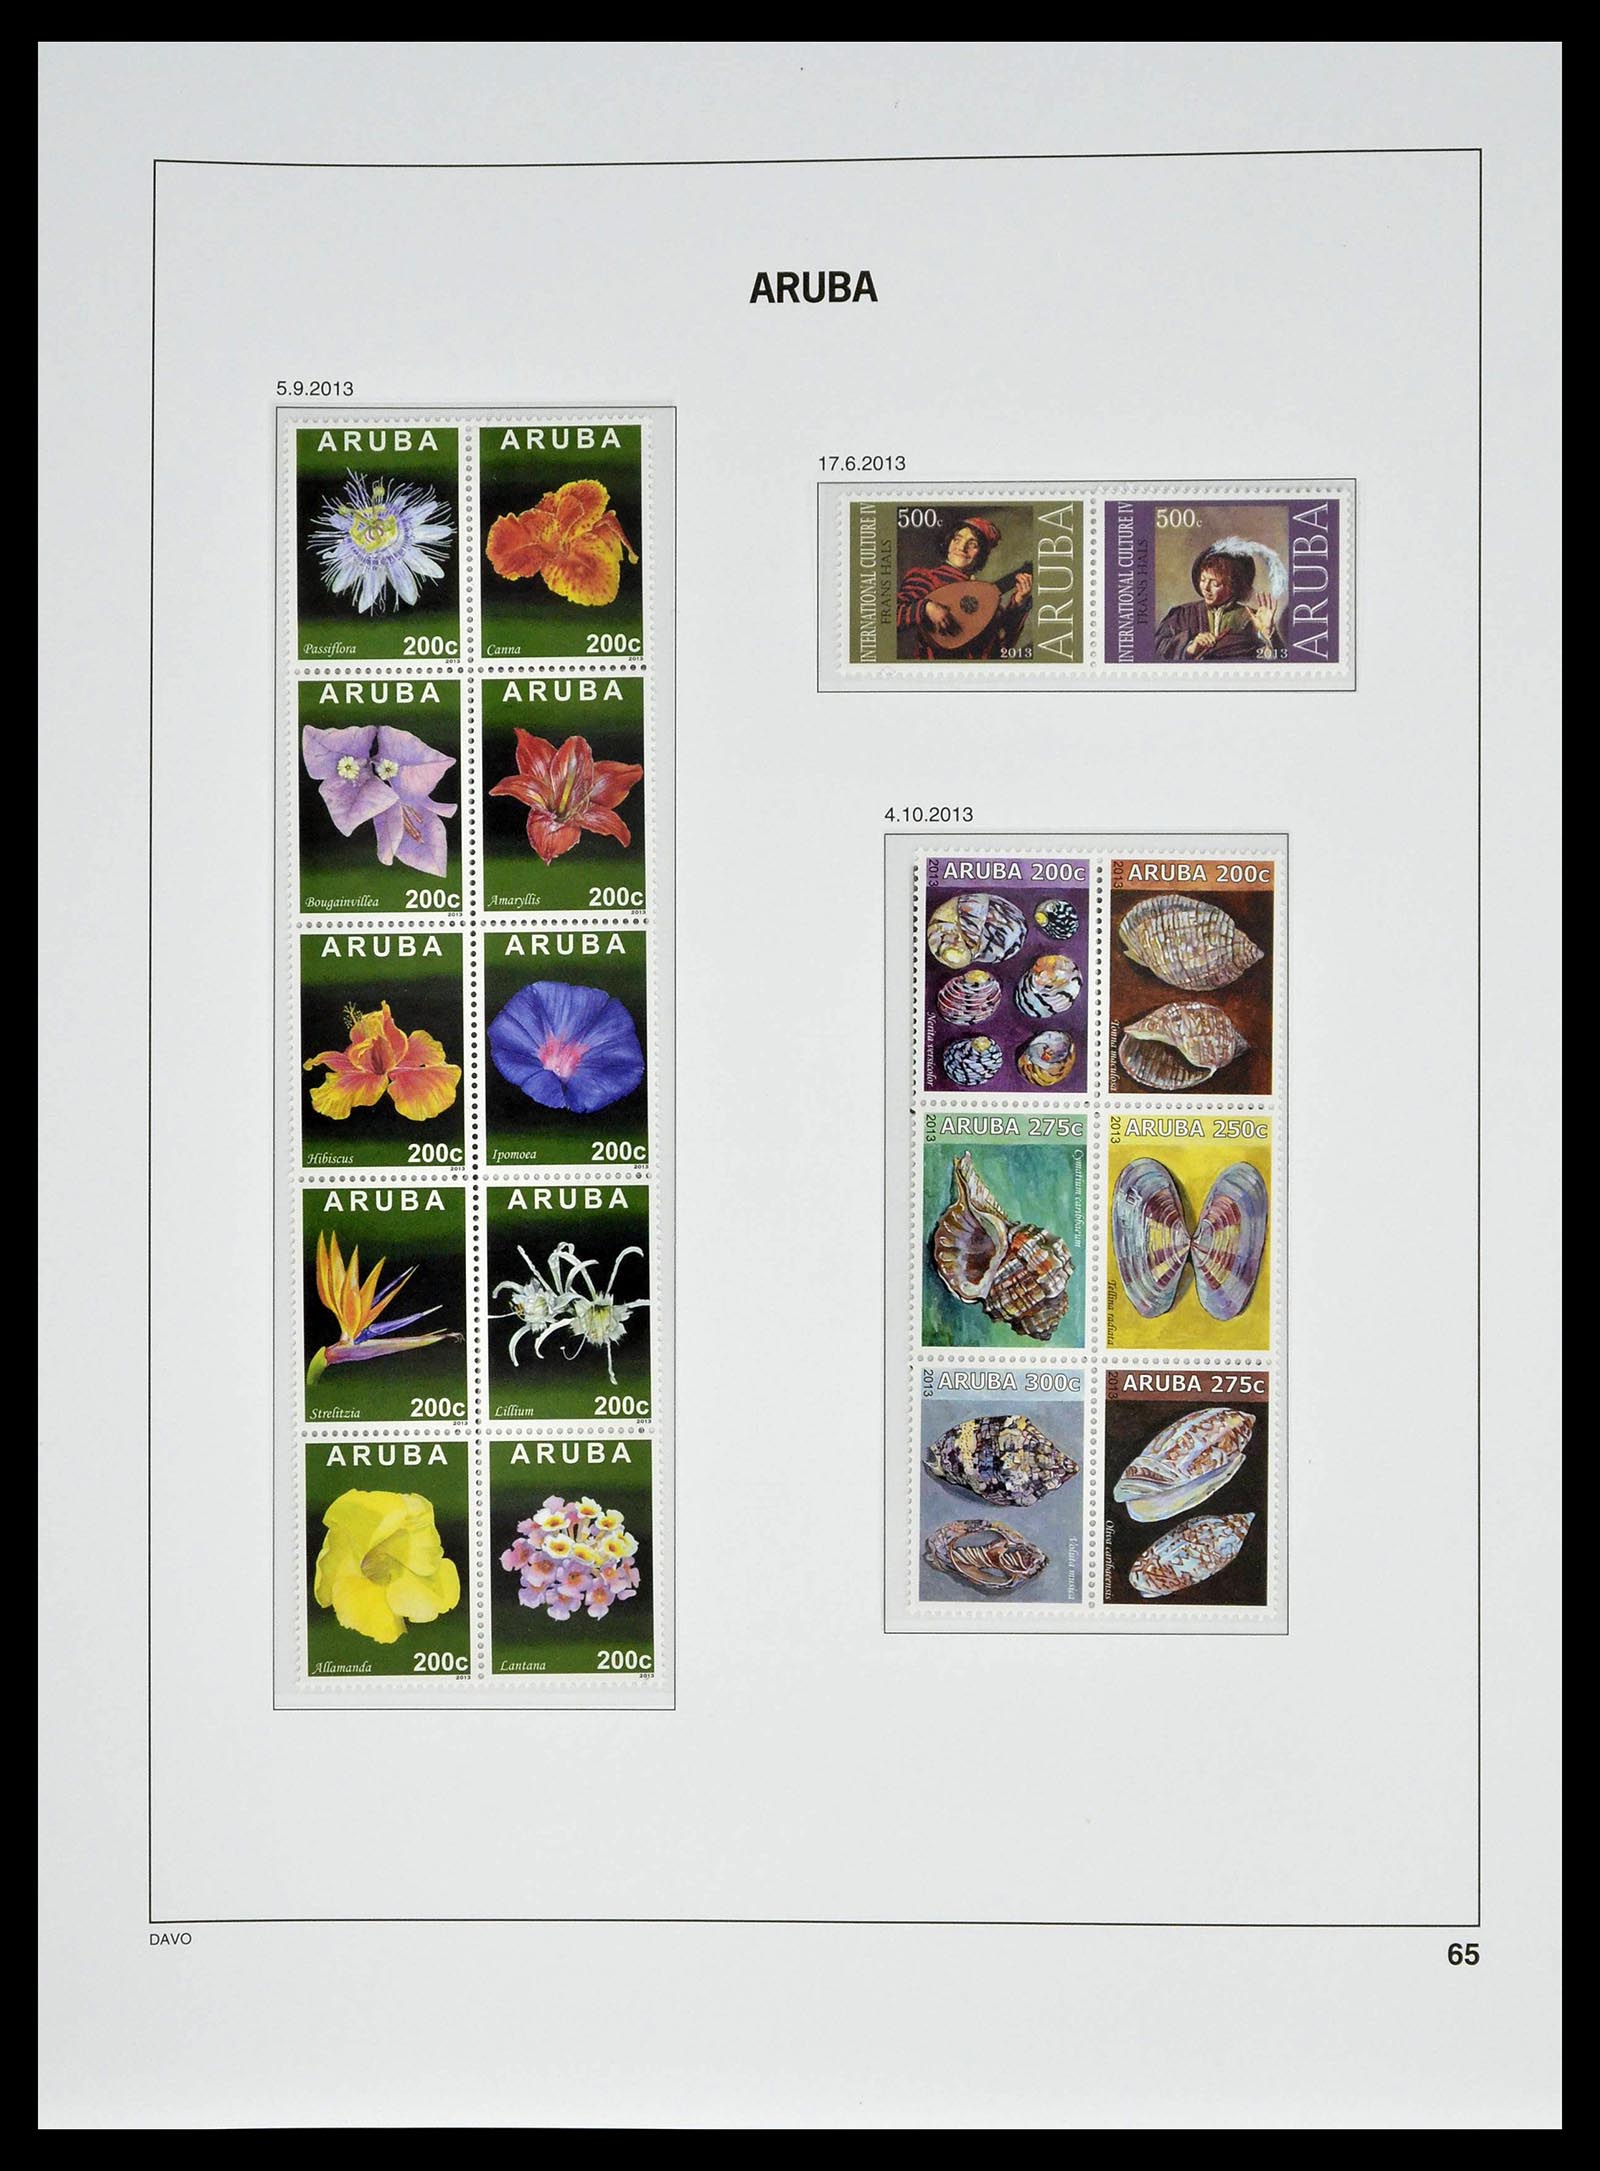 39361 0065 - Stamp collection 39361 Aruba 1986-2013.